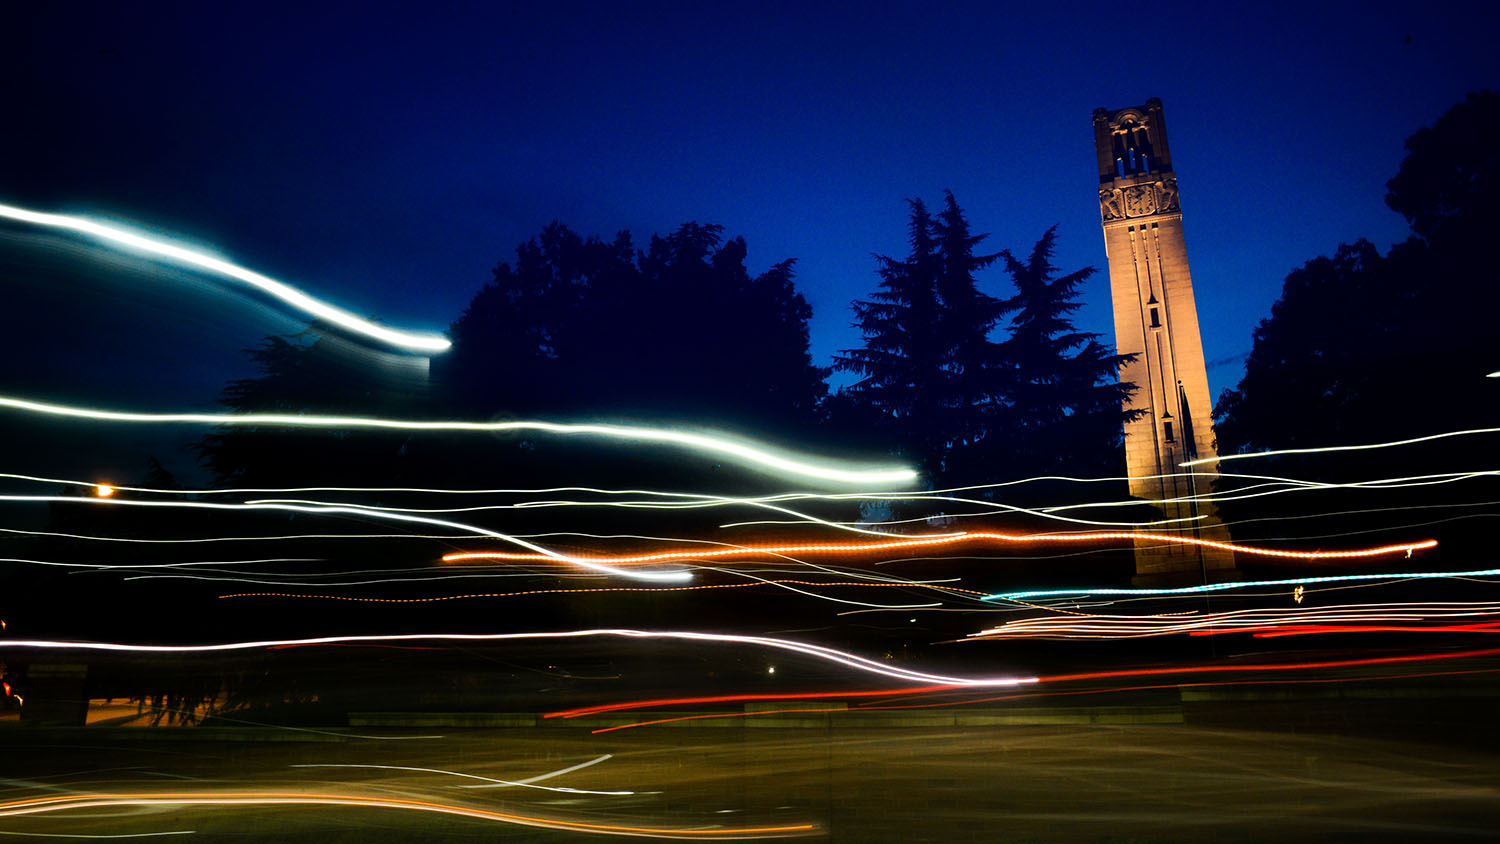 黄昏和夜晚的北卡罗来纳州钟楼。摄影:Marc Hall